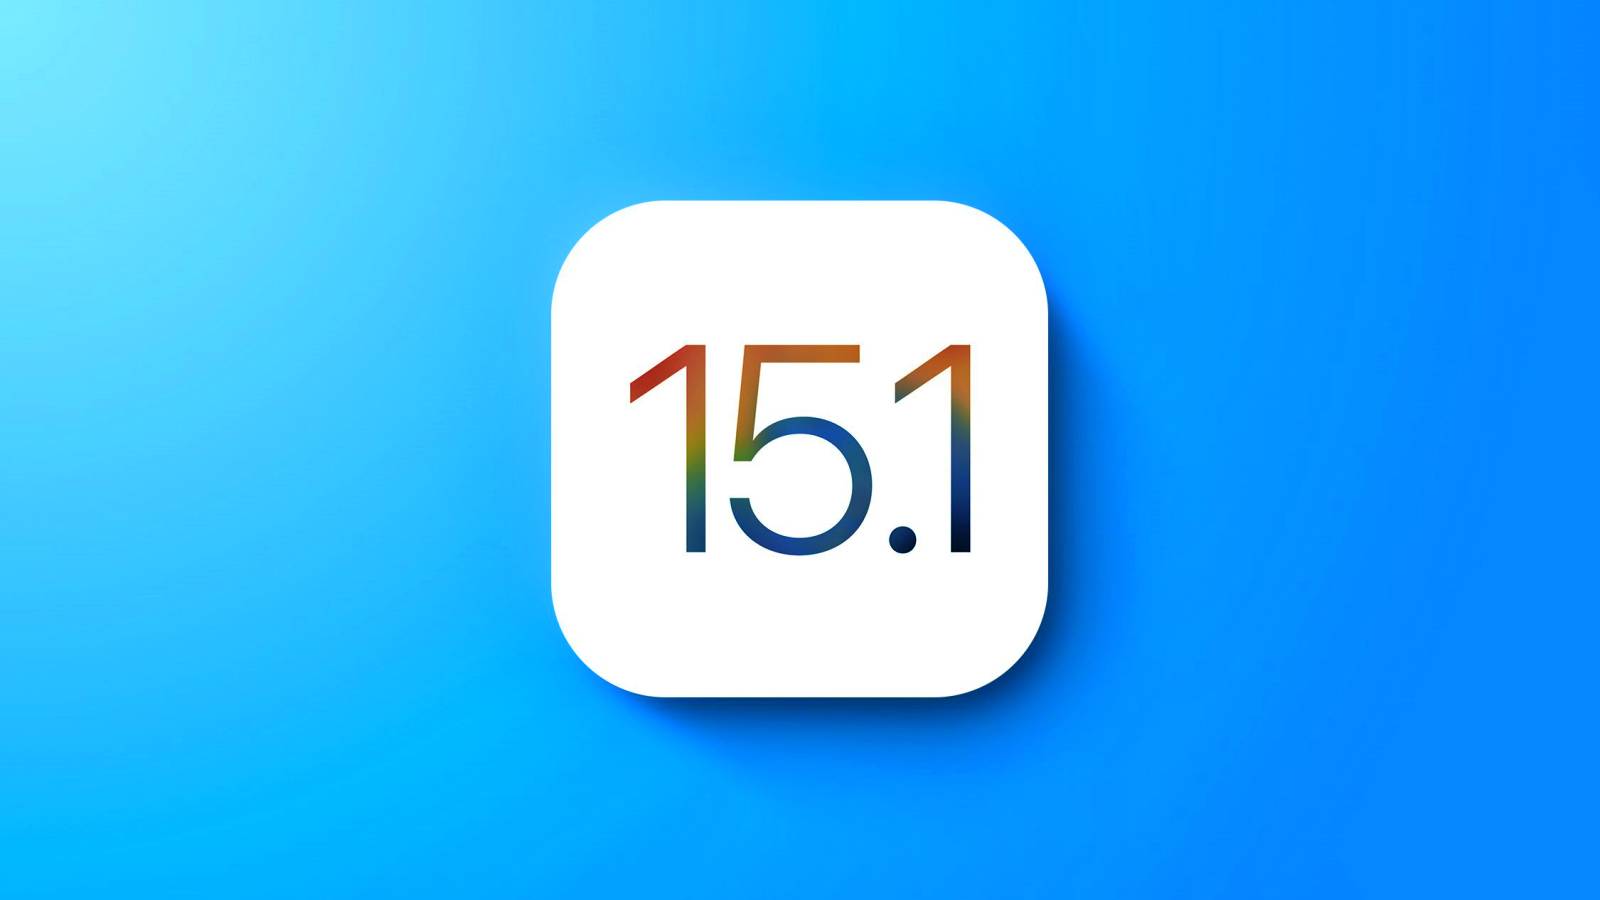 iOS 15.1